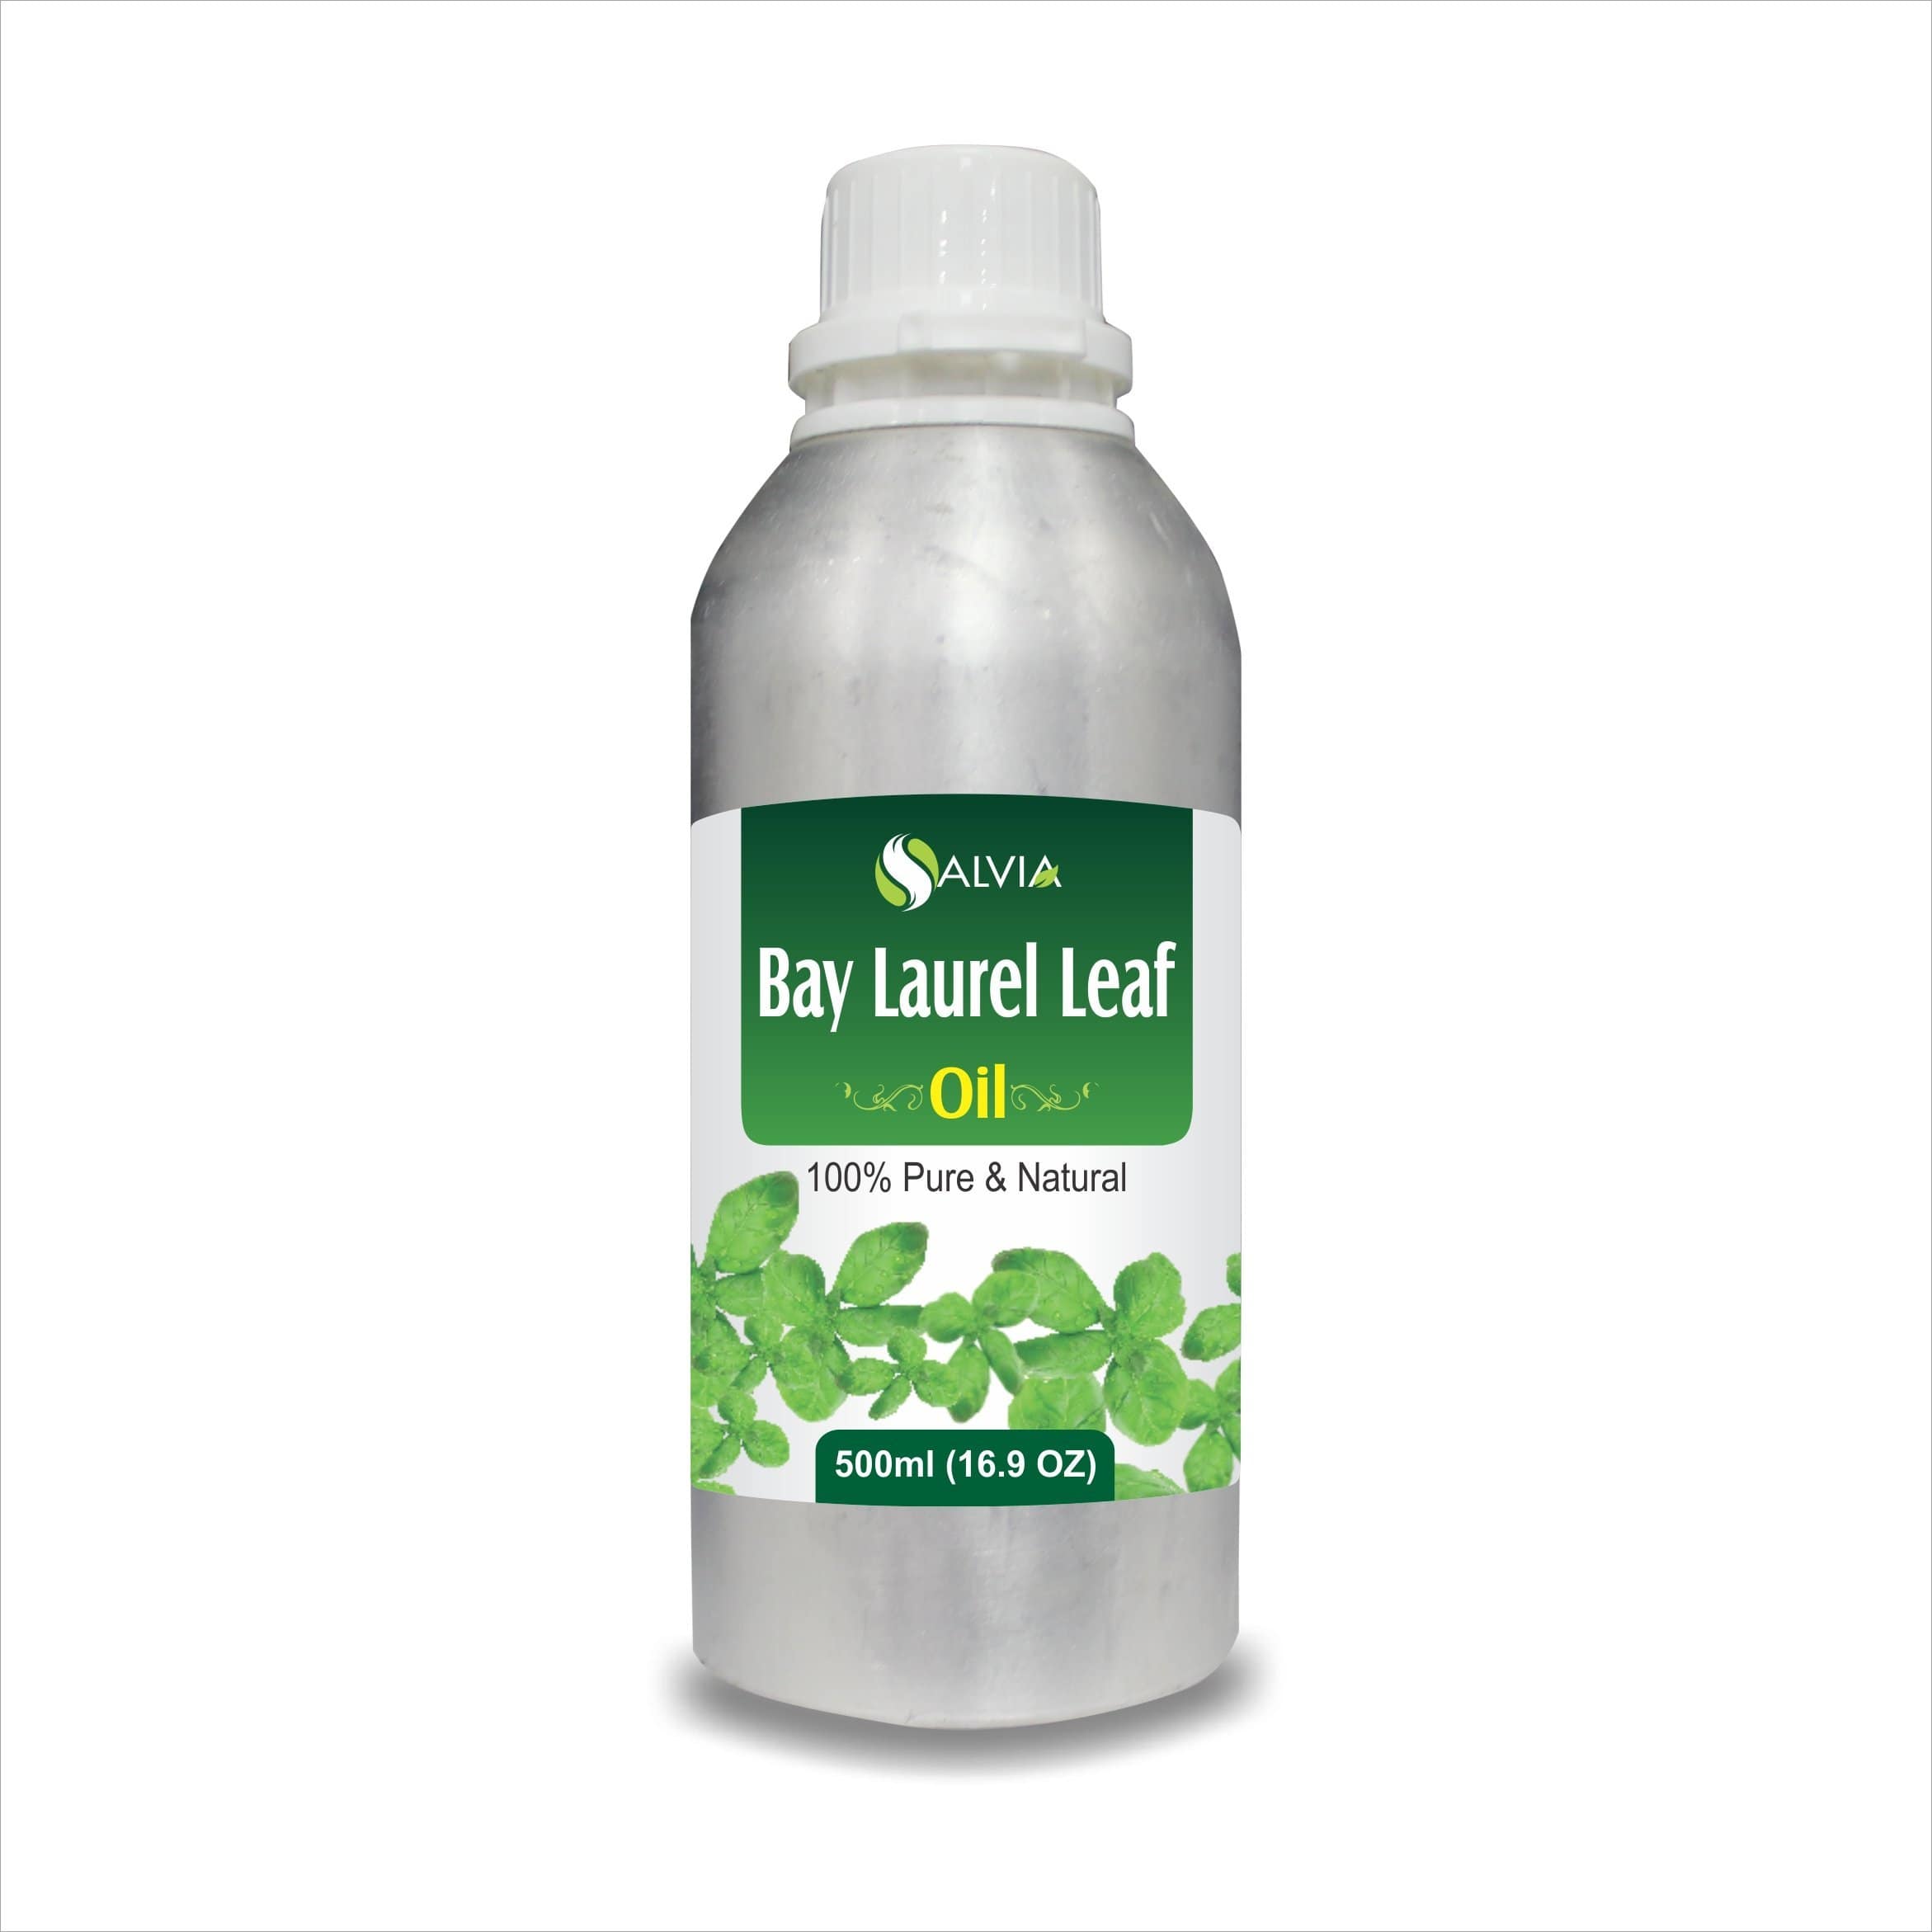 bay laurel oil benefits for skin